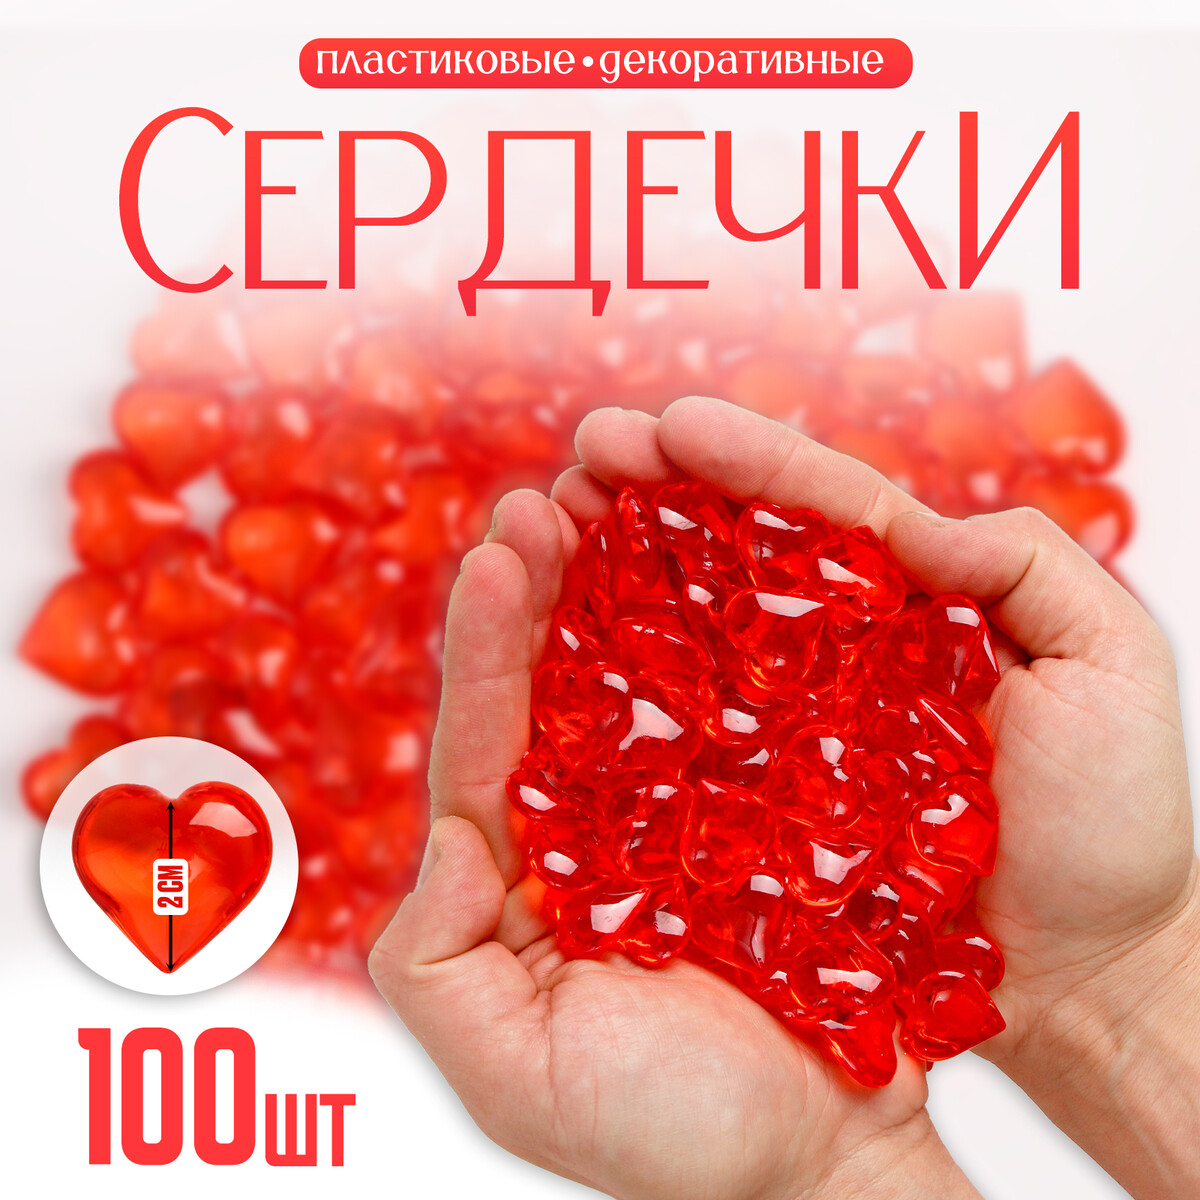 Сердечки пластиковые декоративные, набор 100 шт., размер 1 шт. — 2 × 2 см, цвет красный сердечки декоративные из лозы красные 2шт